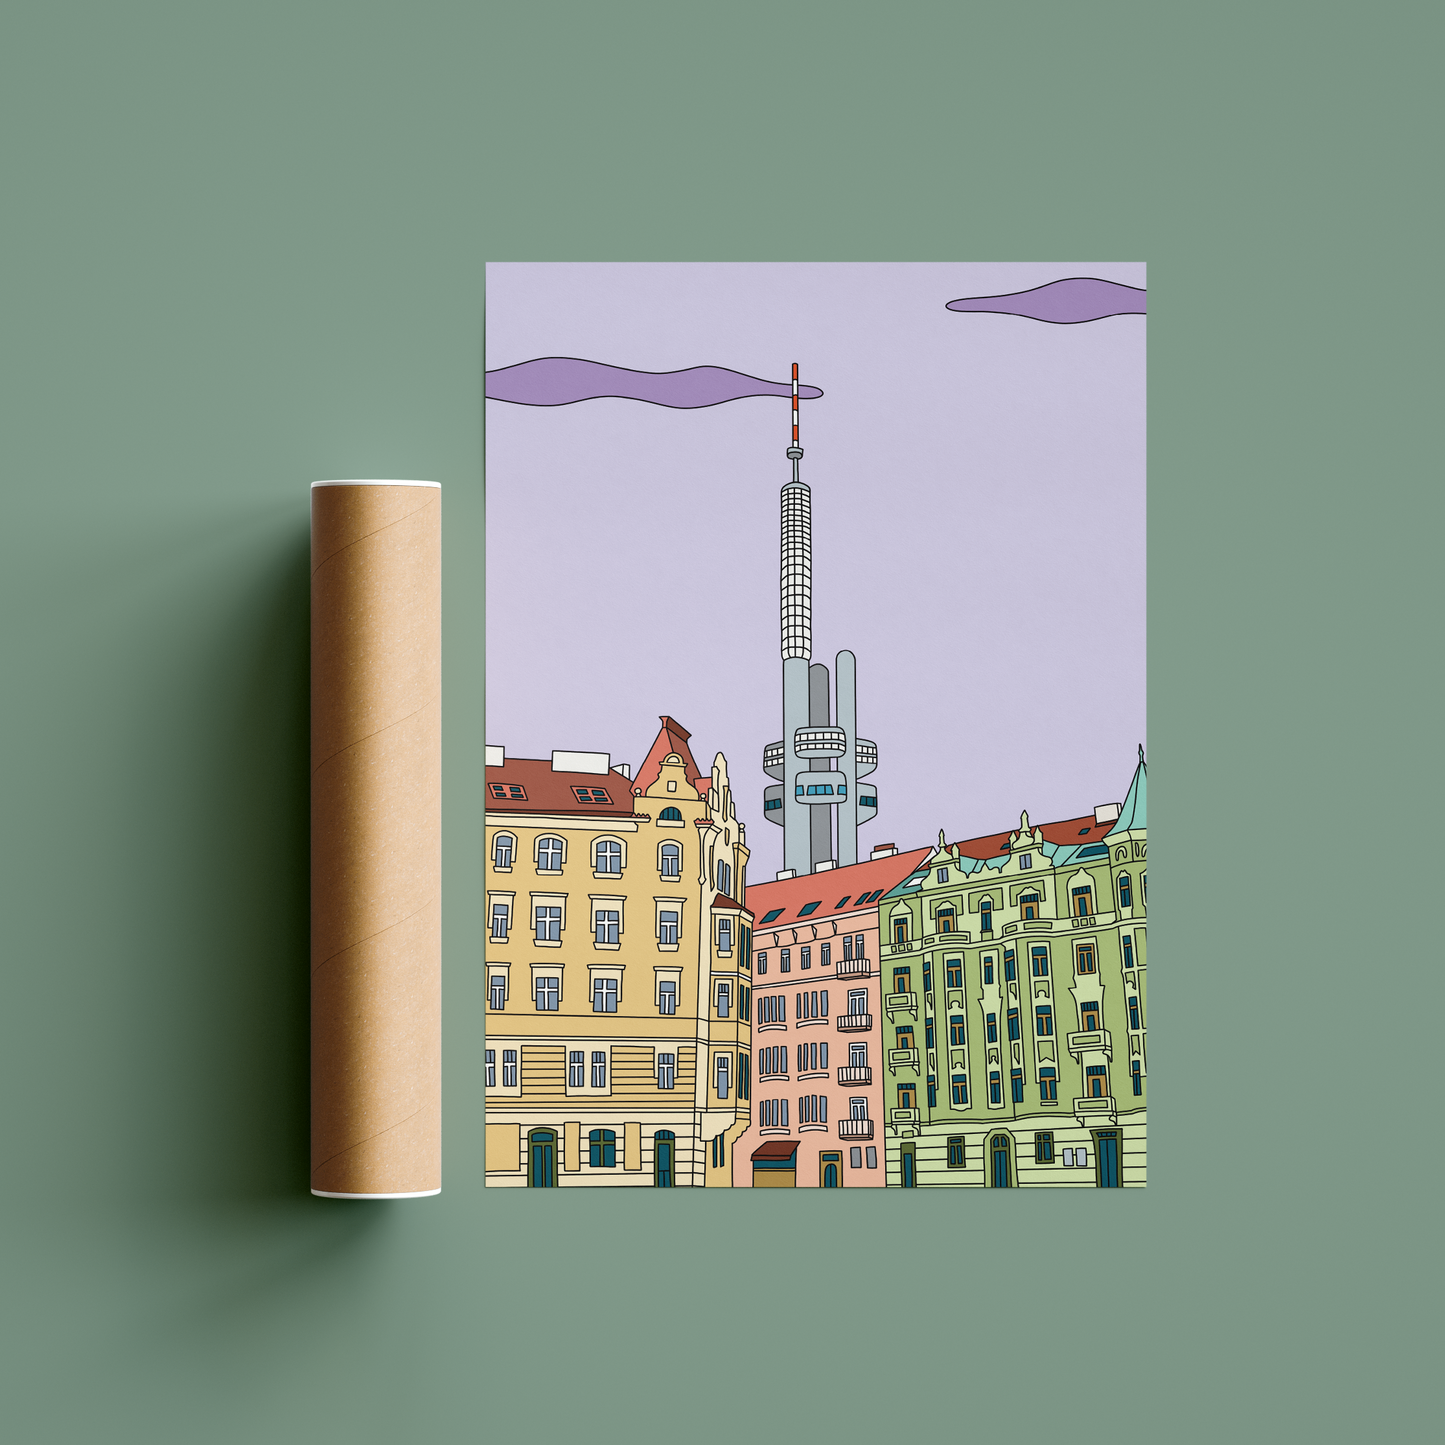 Originální barevný plakát Prague Collection s ilustrací Žižkovské věže.